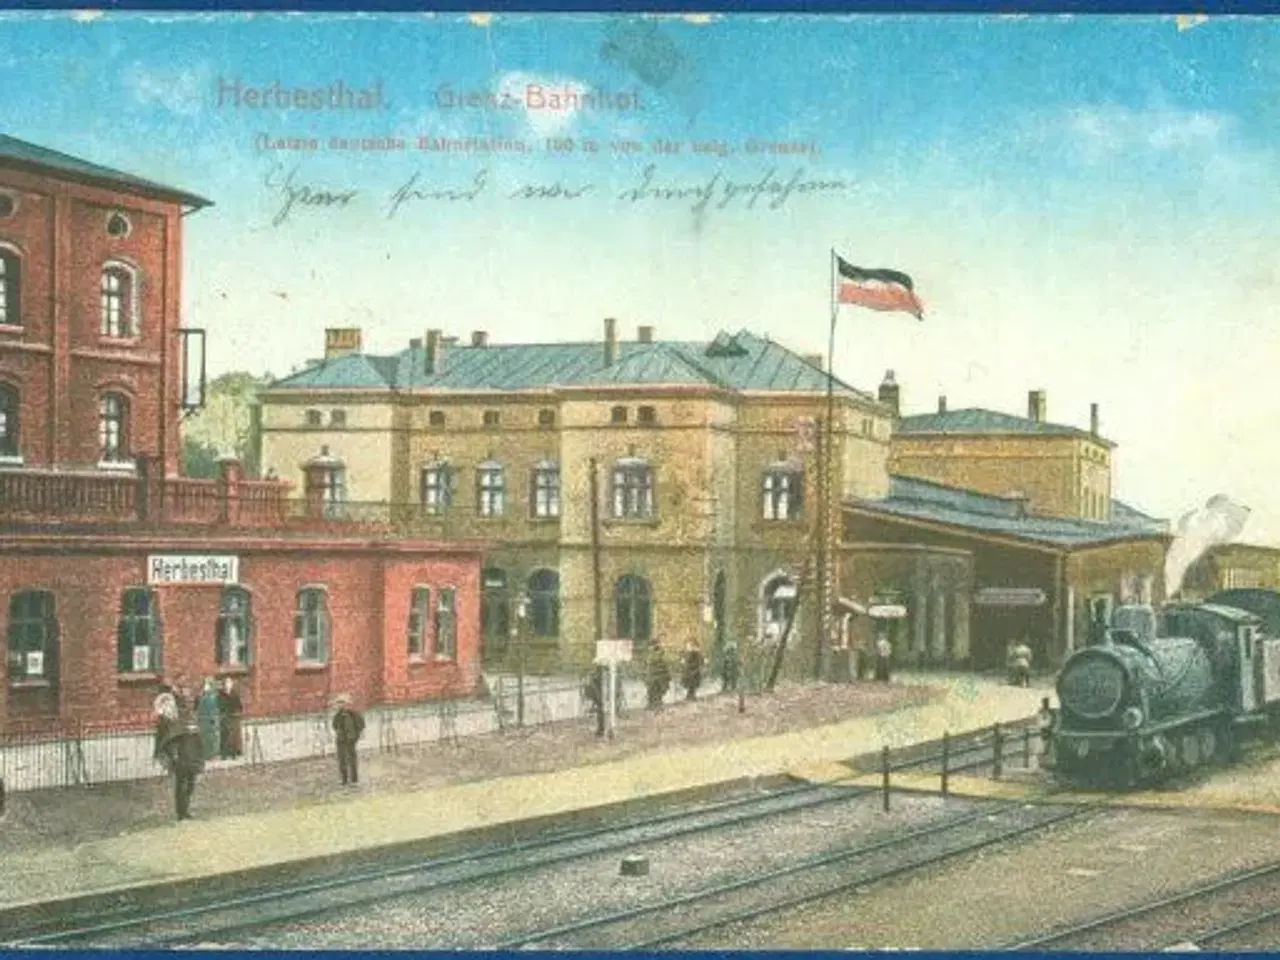 Billede 1 - Herbesthal Bahnhof, 1916